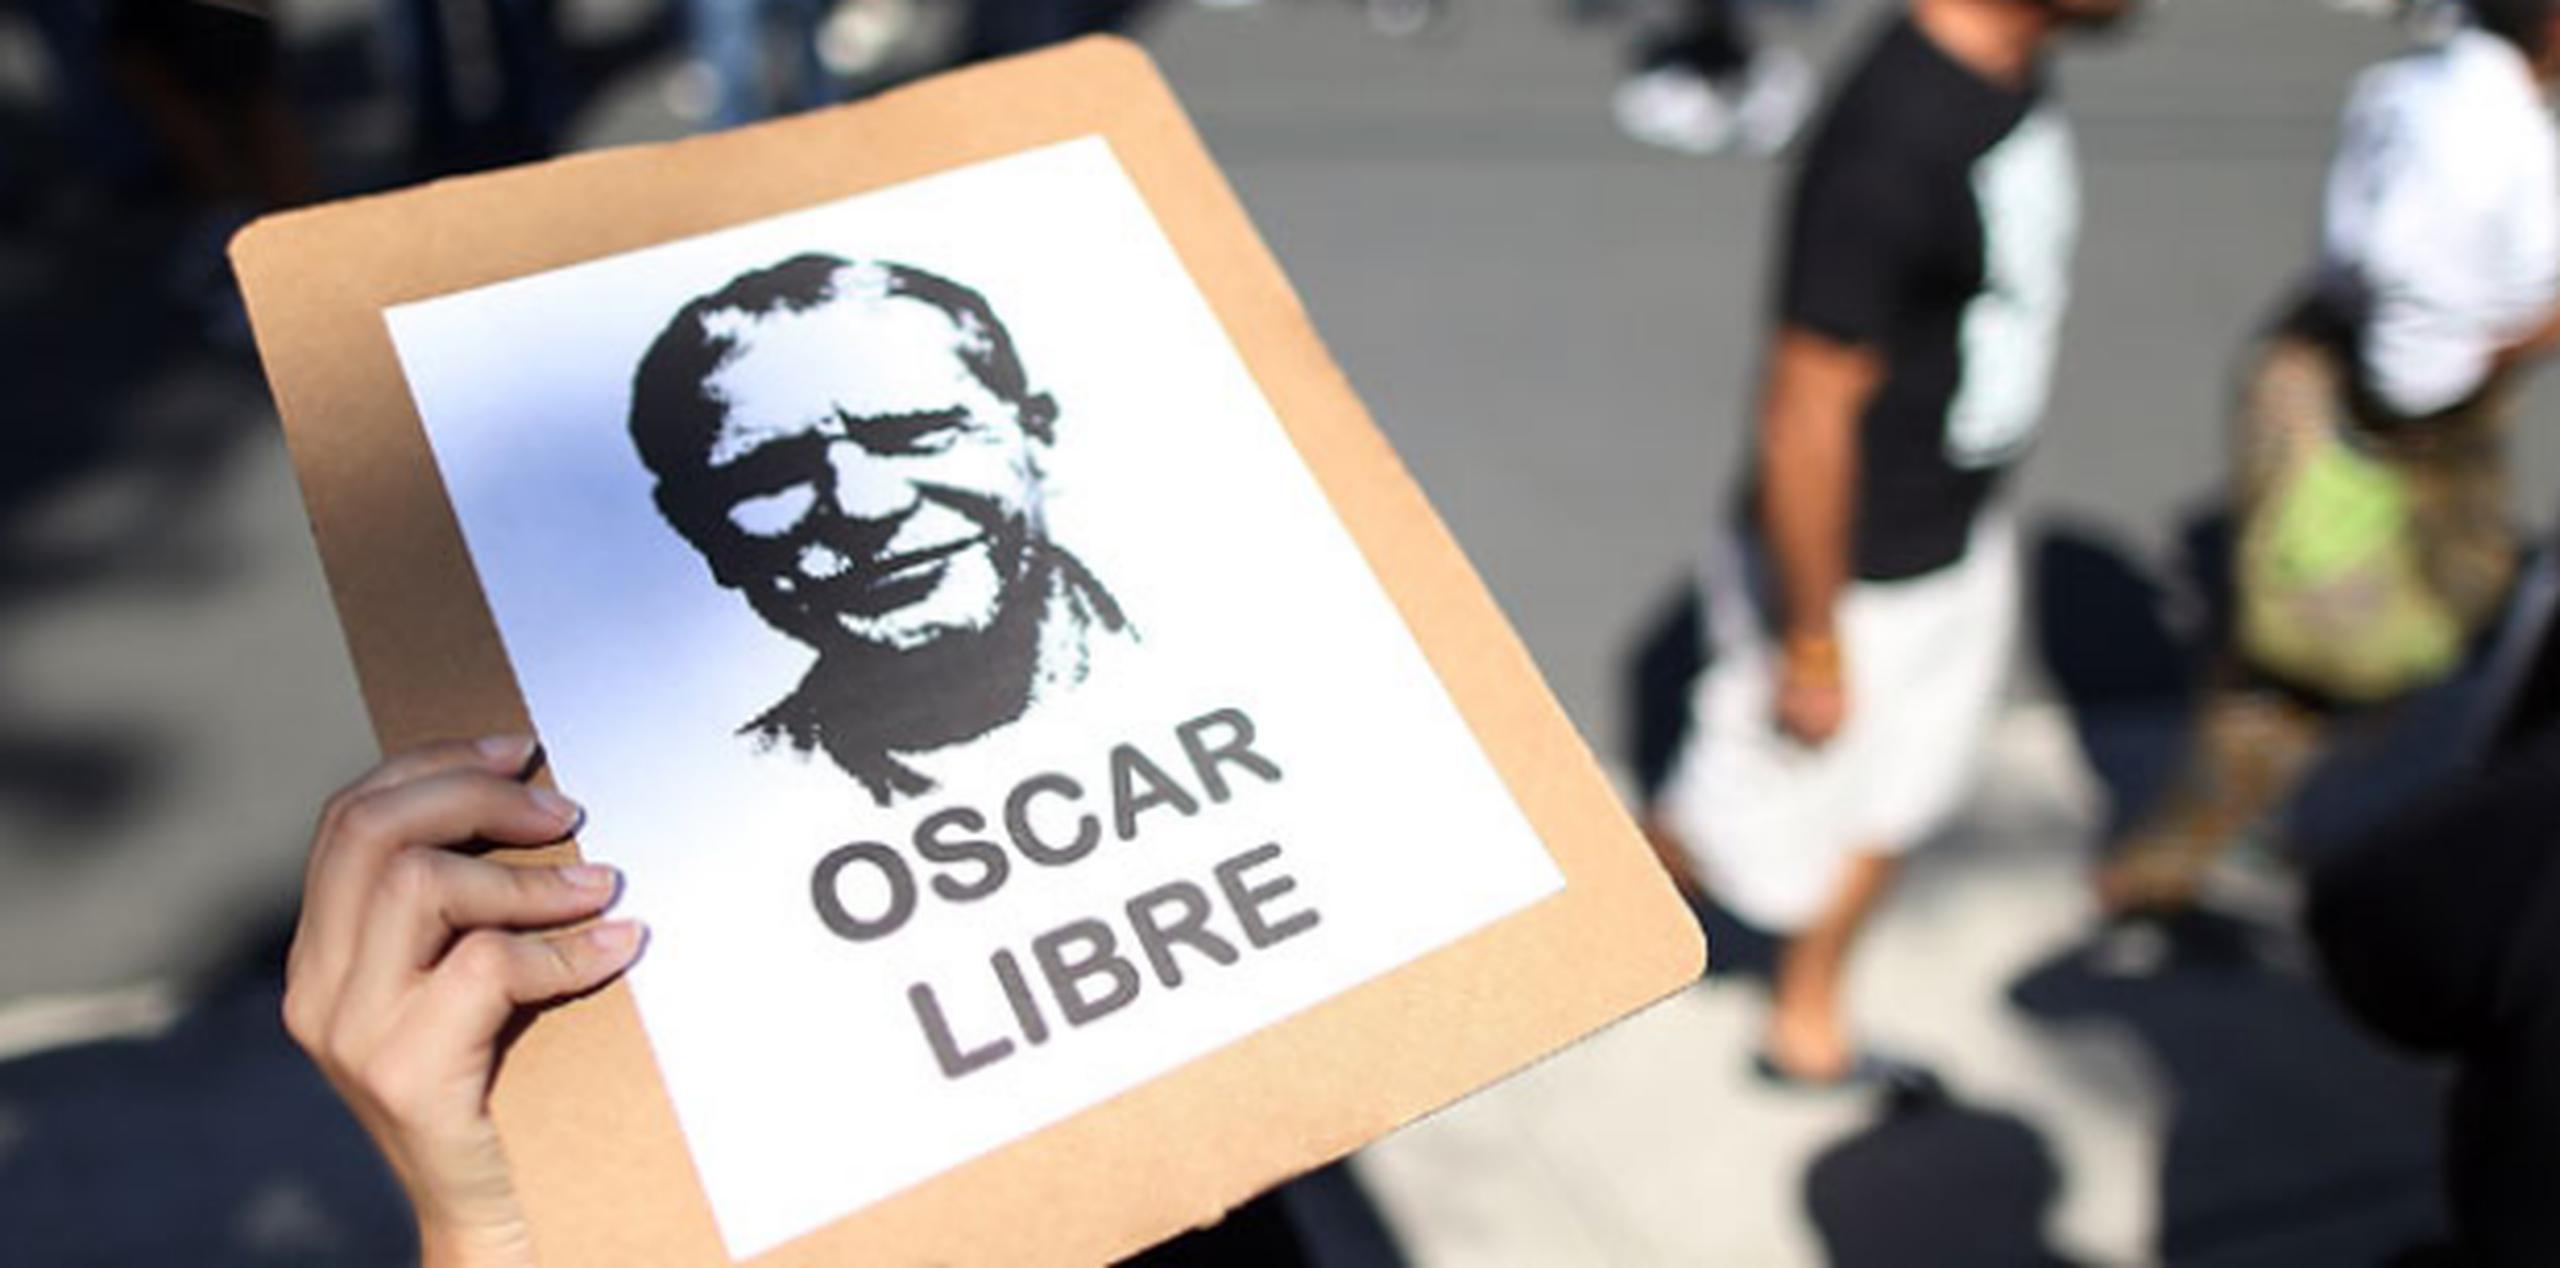 Oscar López Rivera fue detenido en 1981 por conspiración sediciosa y condenado a una pena de 55 años de cárcel, a los que se añadieron posteriormente otros quince más en 1987 por intento de fuga. (Archivo)